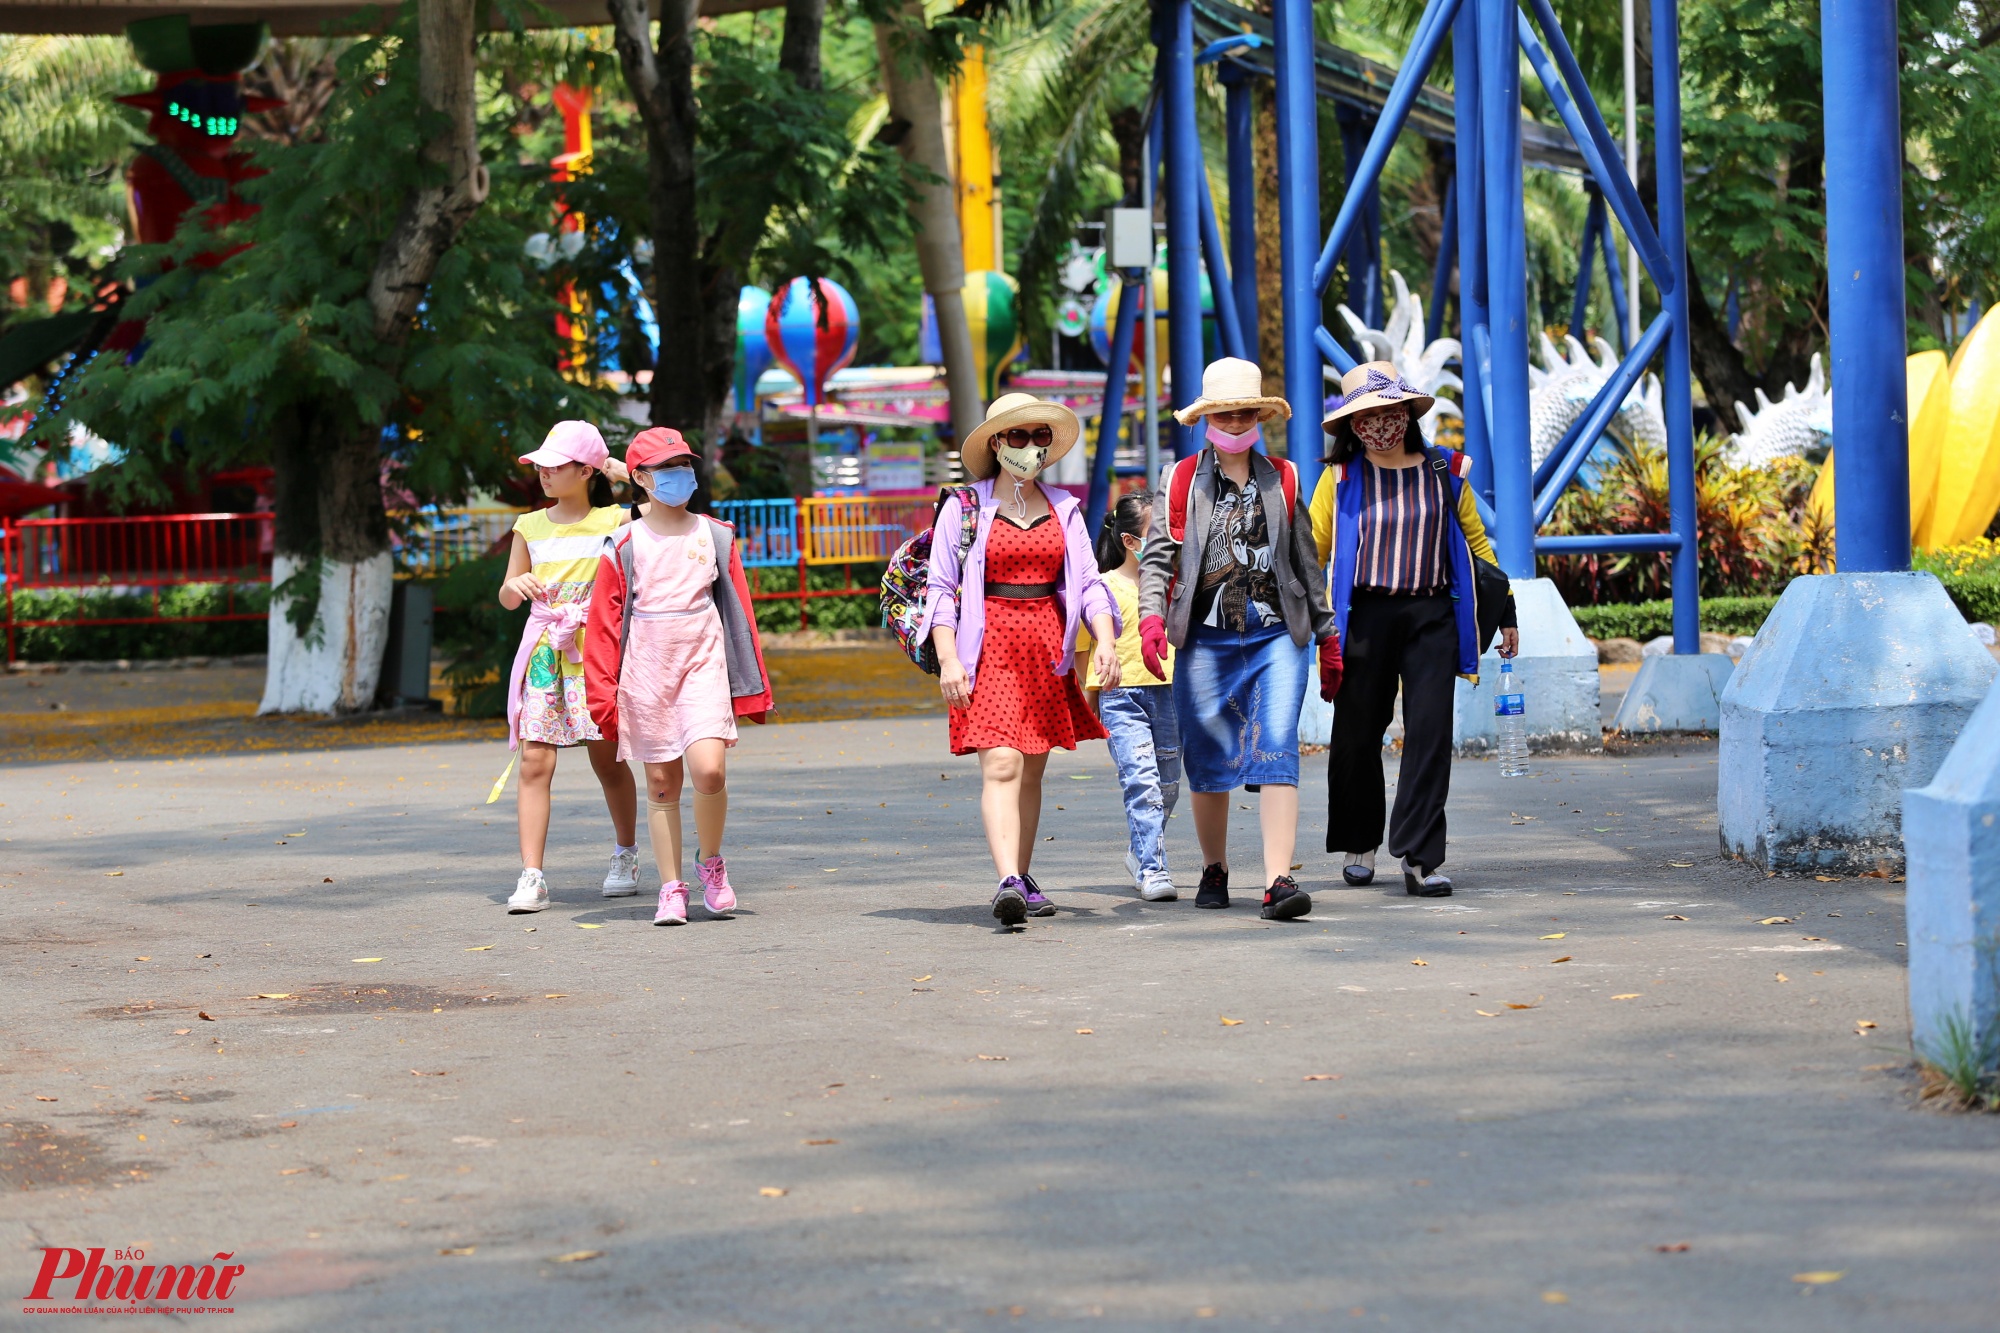 Trong khi đó, tại công viên văn hóa Đầm Sen, theo ghi nhận của phóng viên vẫn có khách đến tham quan vui chơi tại đây, tuy nhiên lượng khách cũng giảm so với thời điểm trước dịch. Trong ảnh nhiều phụ huynh bịt kín khẩu trang cho trẻ em khi tới đây.